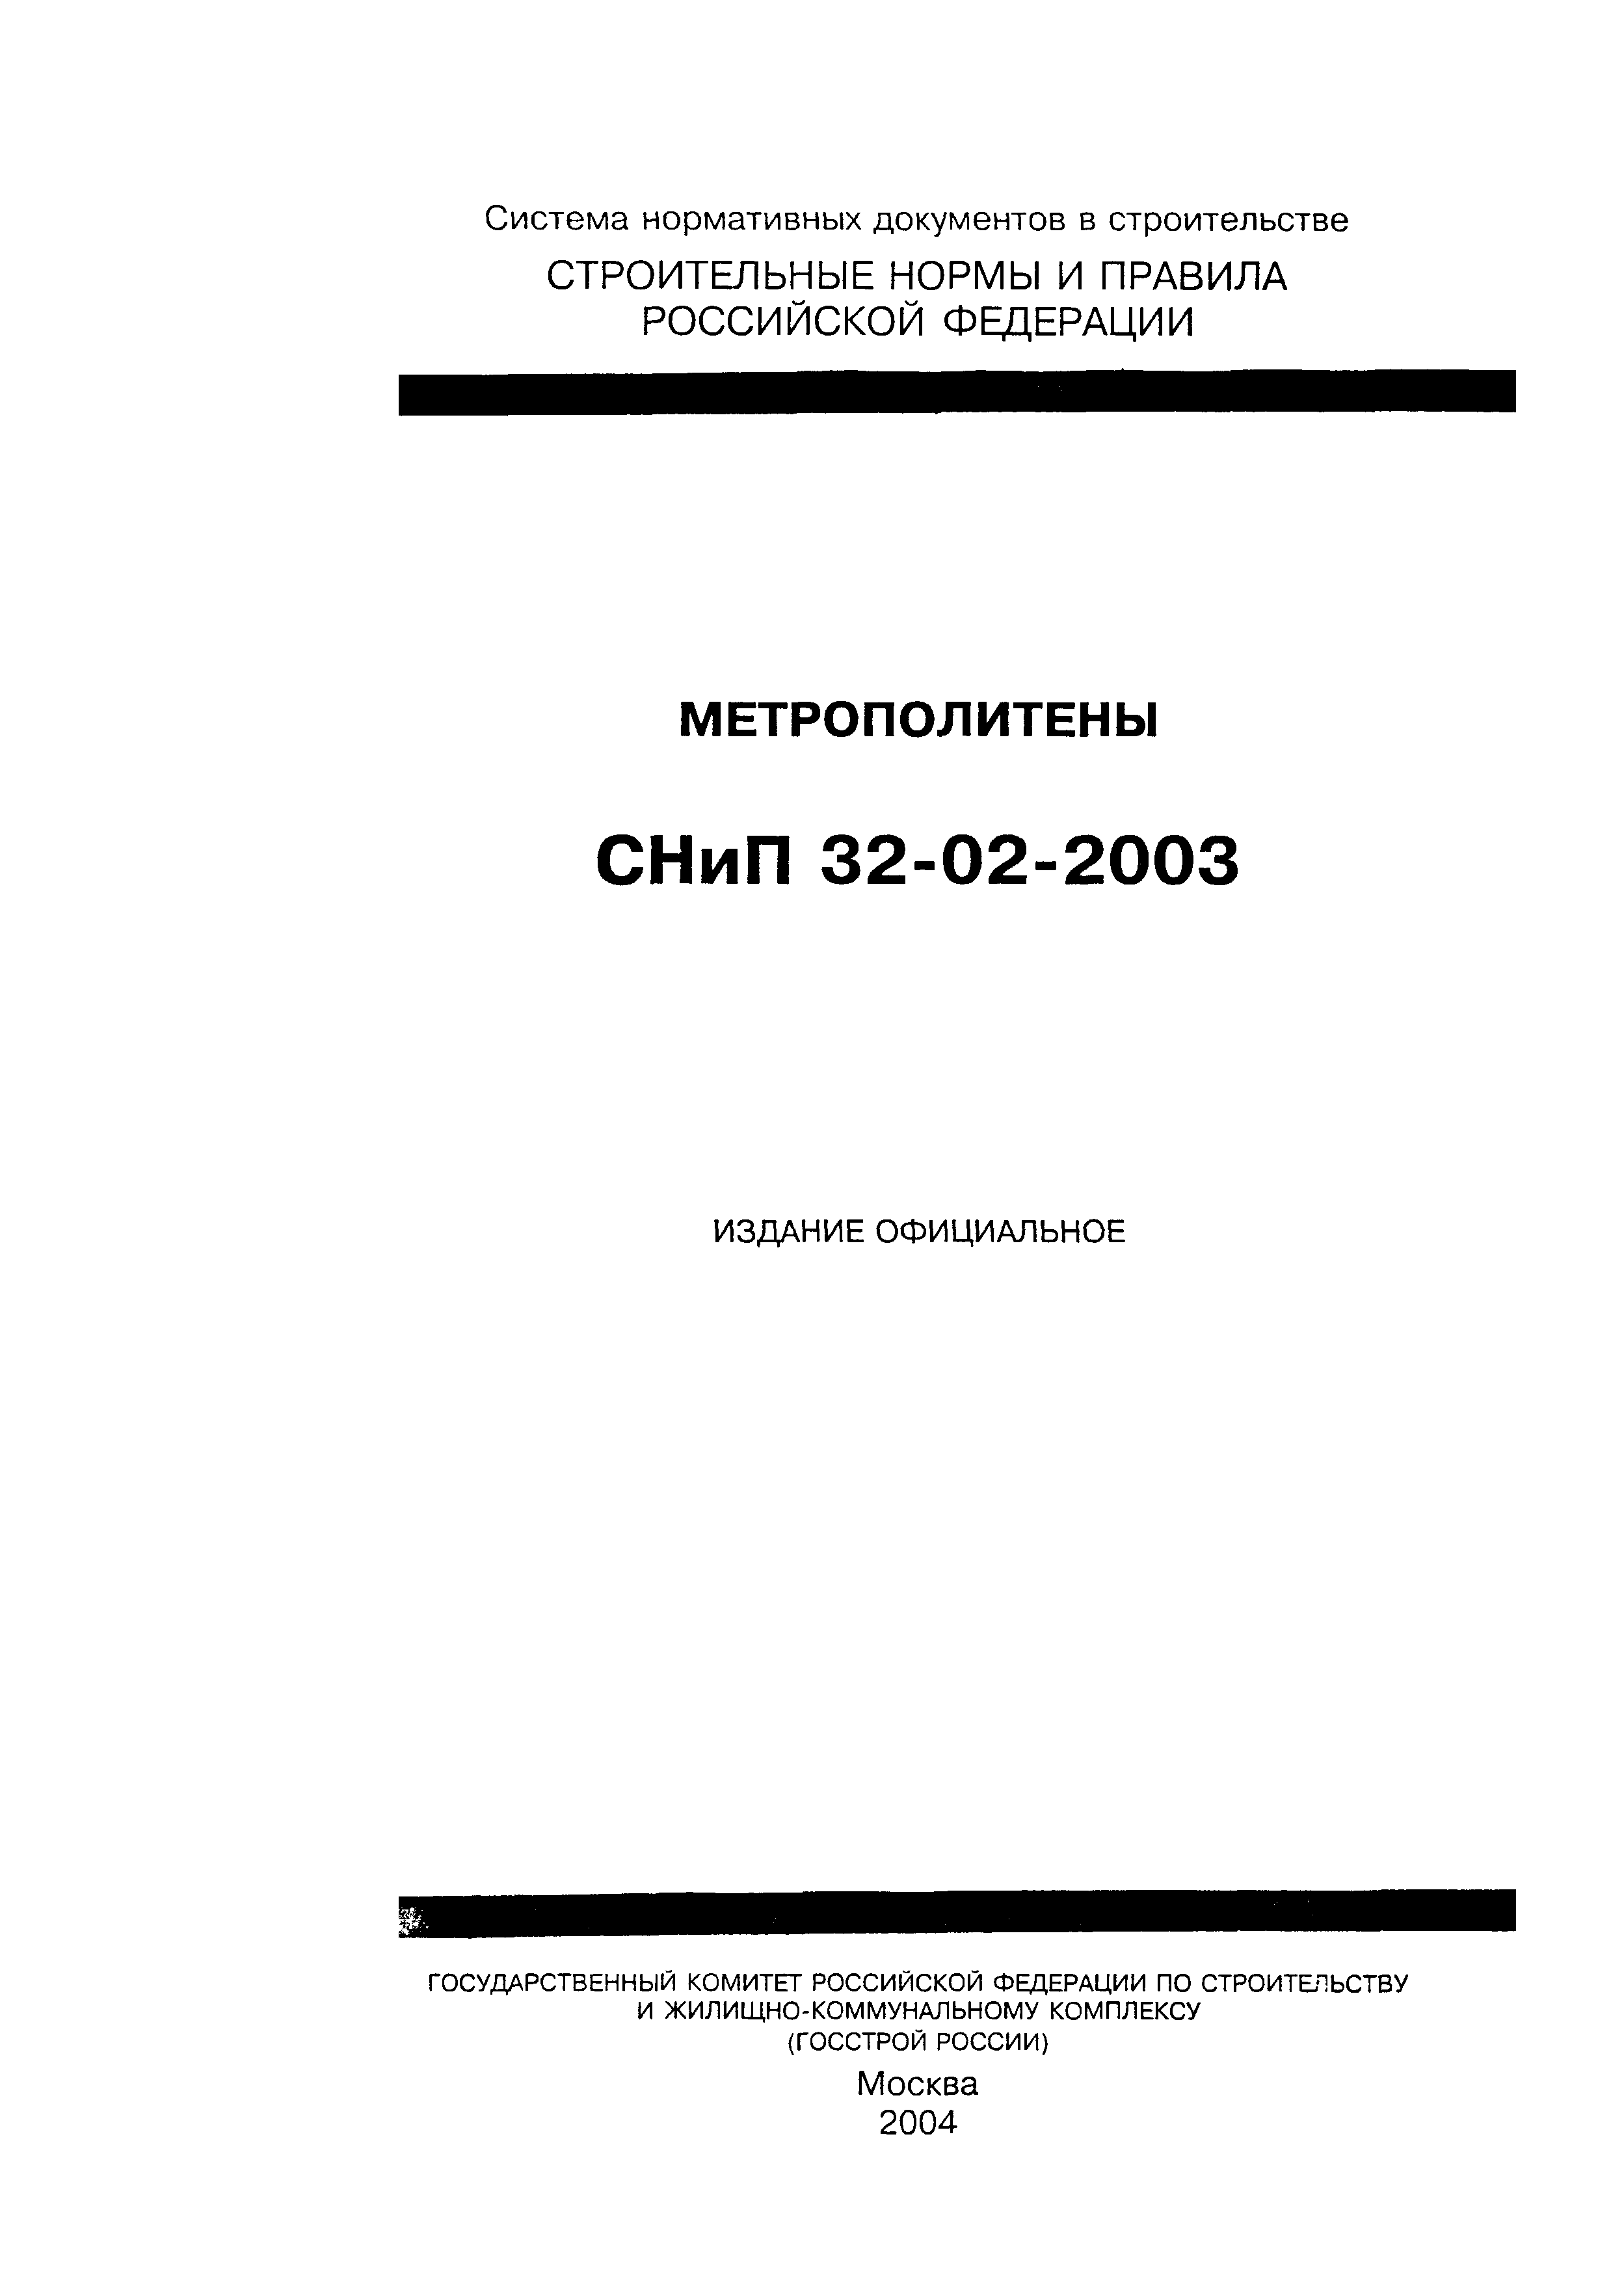 СНиП 32-02-2003